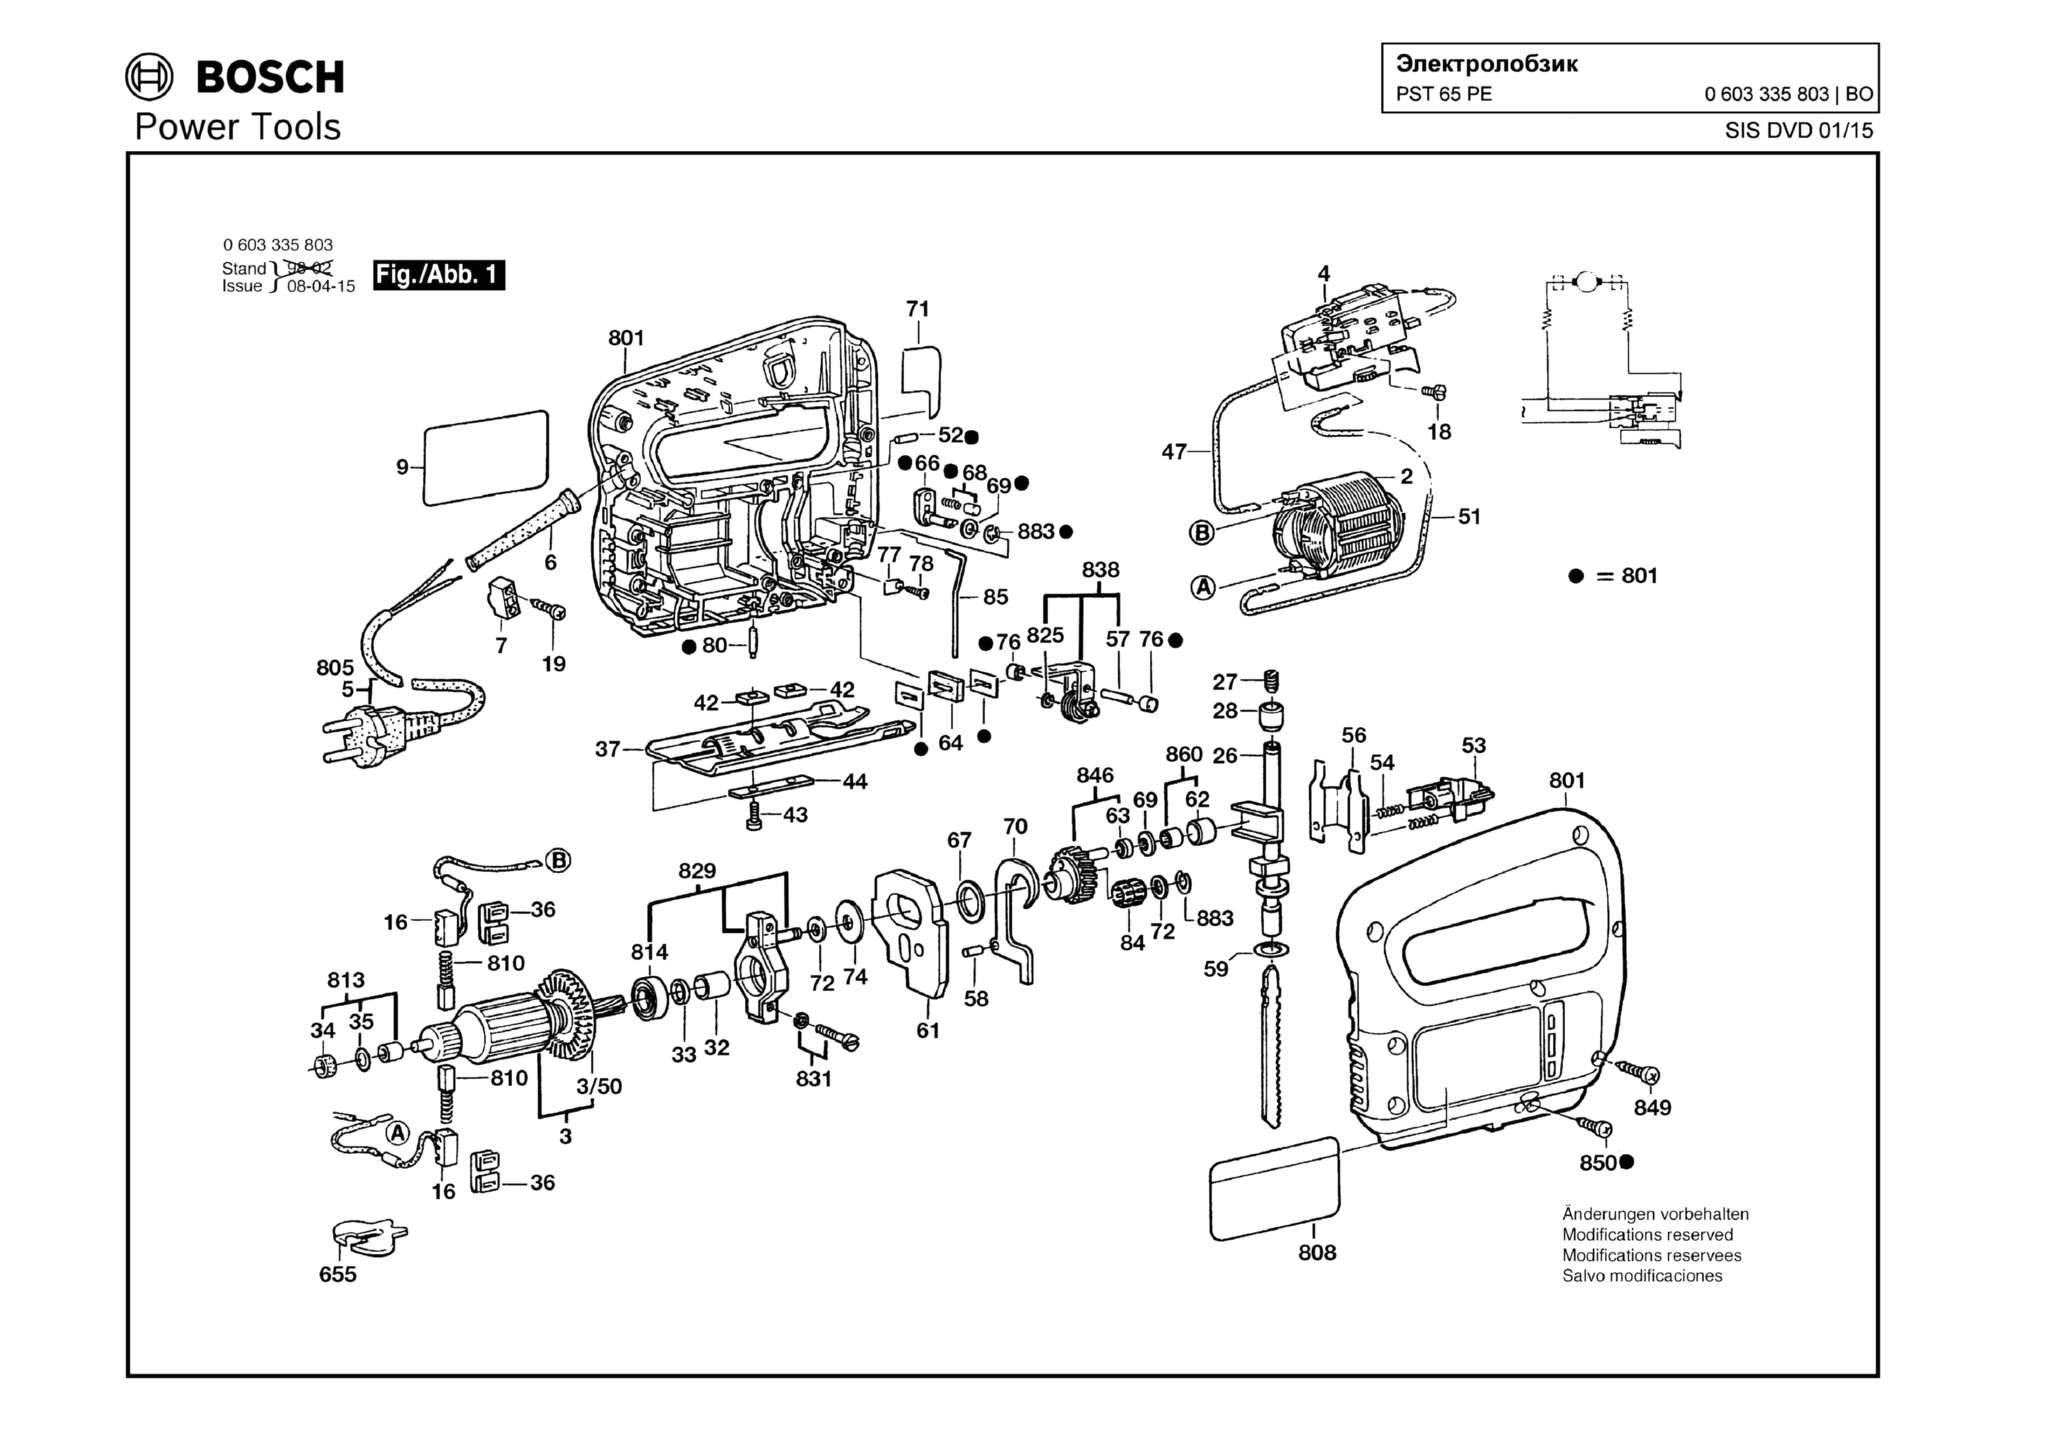 Запчасти, схема и деталировка Bosch PST 65 PE (ТИП 0603335803)